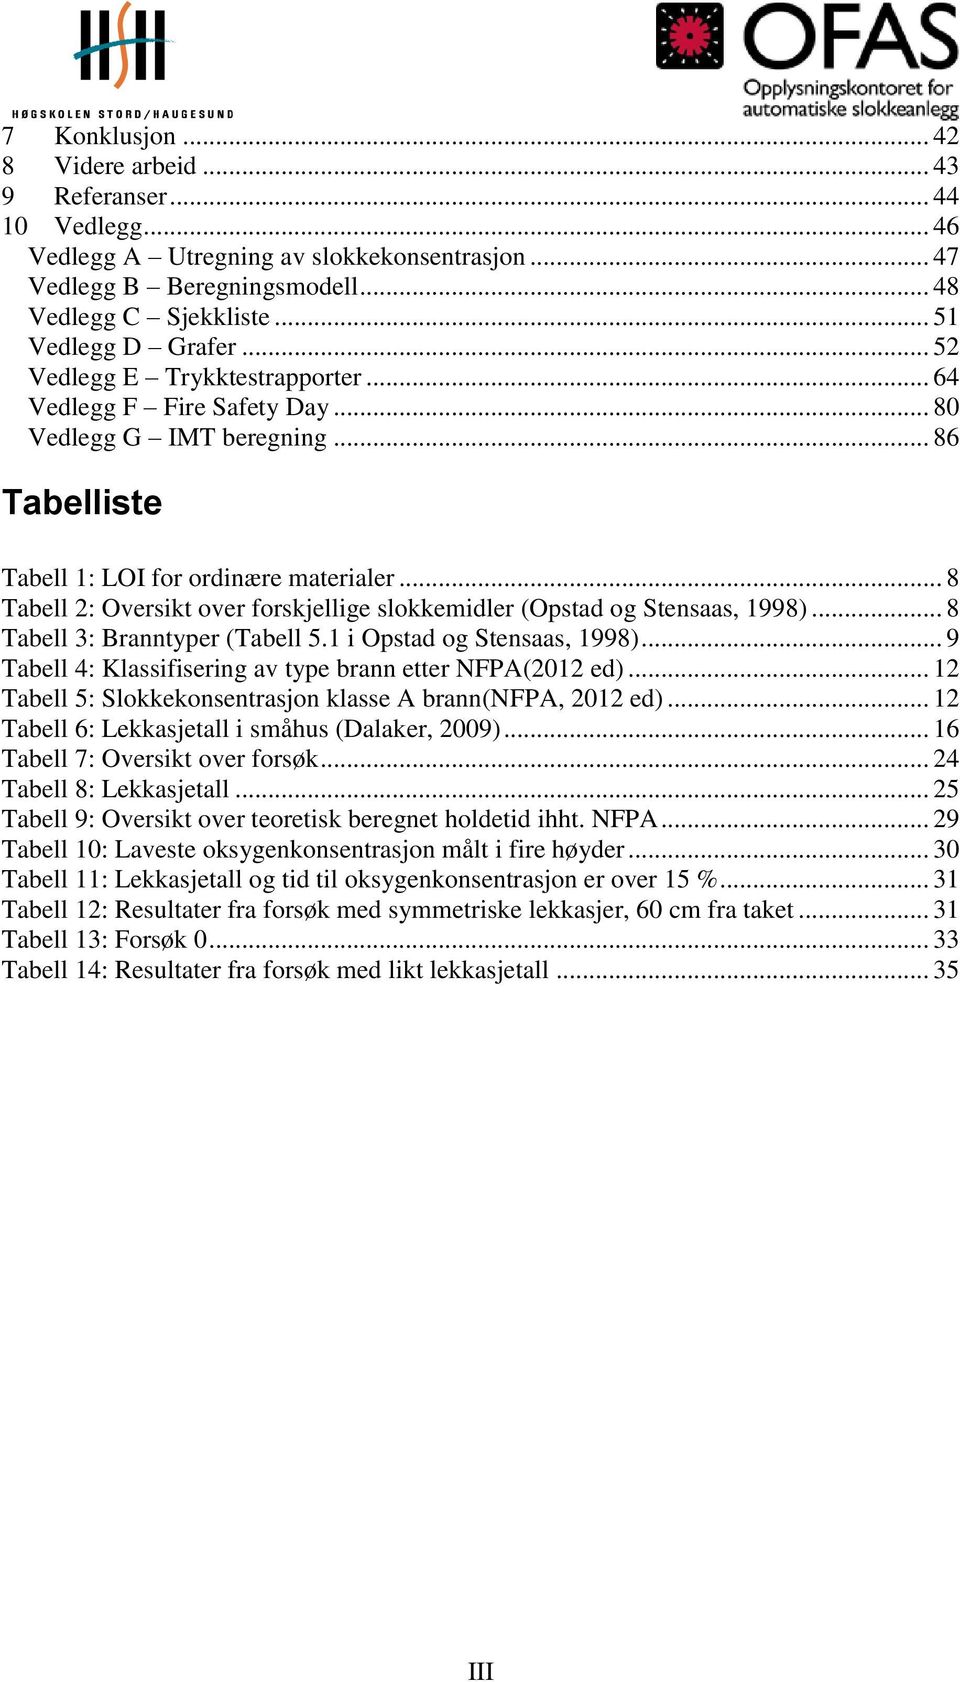 .. 8 Tabell 2: Oversikt over forskjellige slokkemidler (Opstad og Stensaas, 1998)... 8 Tabell 3: Branntyper (Tabell 5.1 i Opstad og Stensaas, 1998).